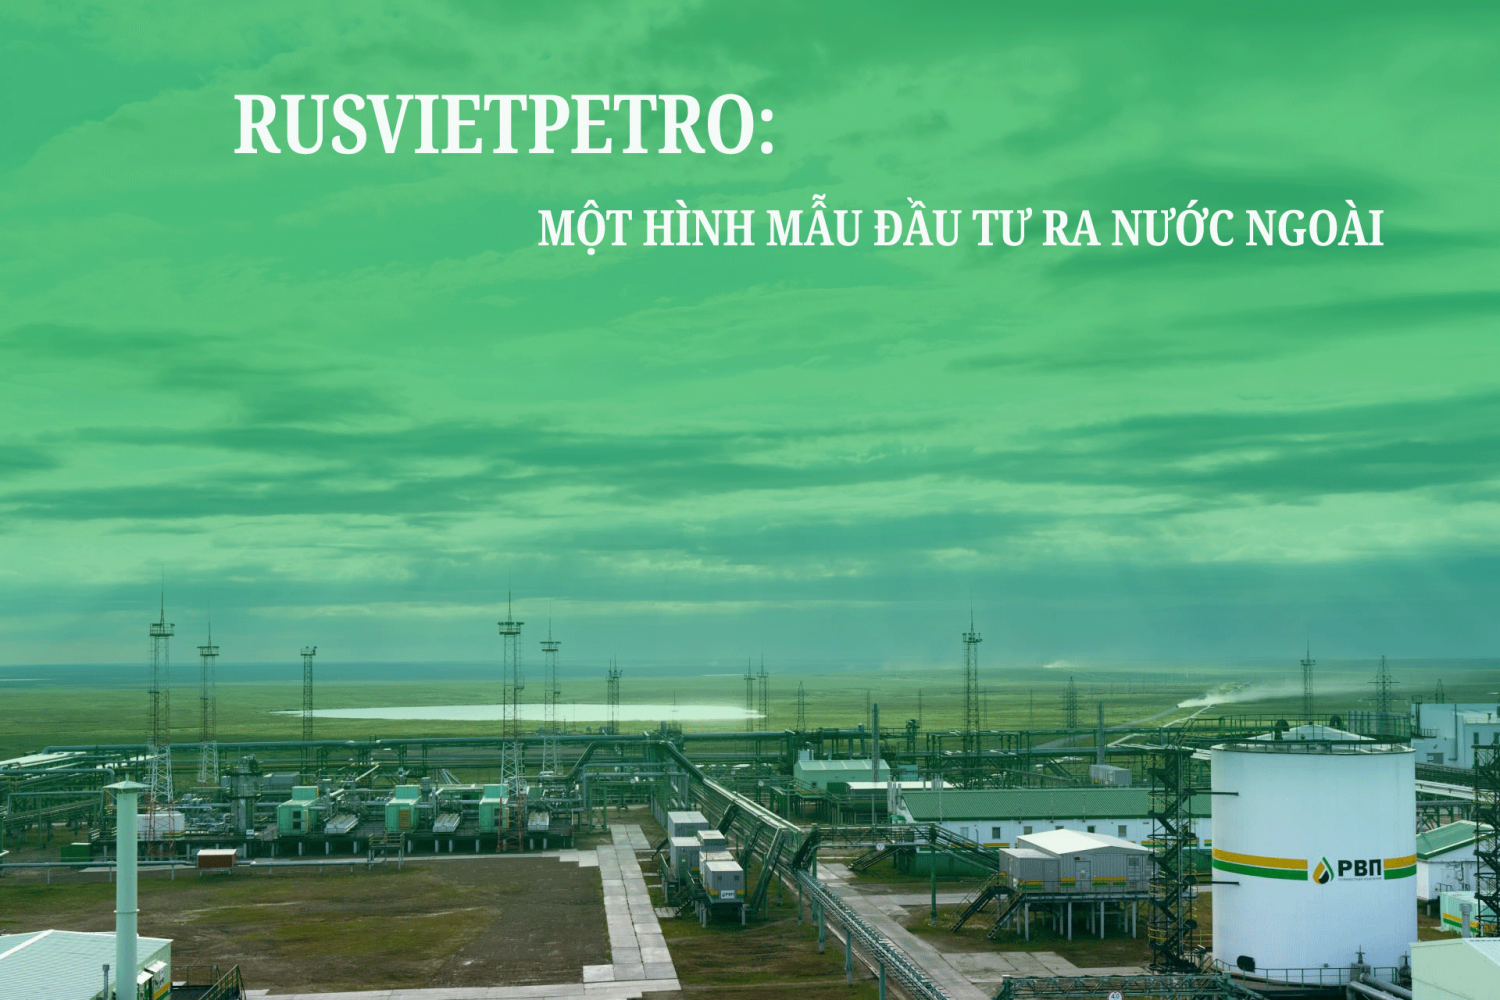 Rusvietpetro một hình mẫu đầu tư ra nước ngoài